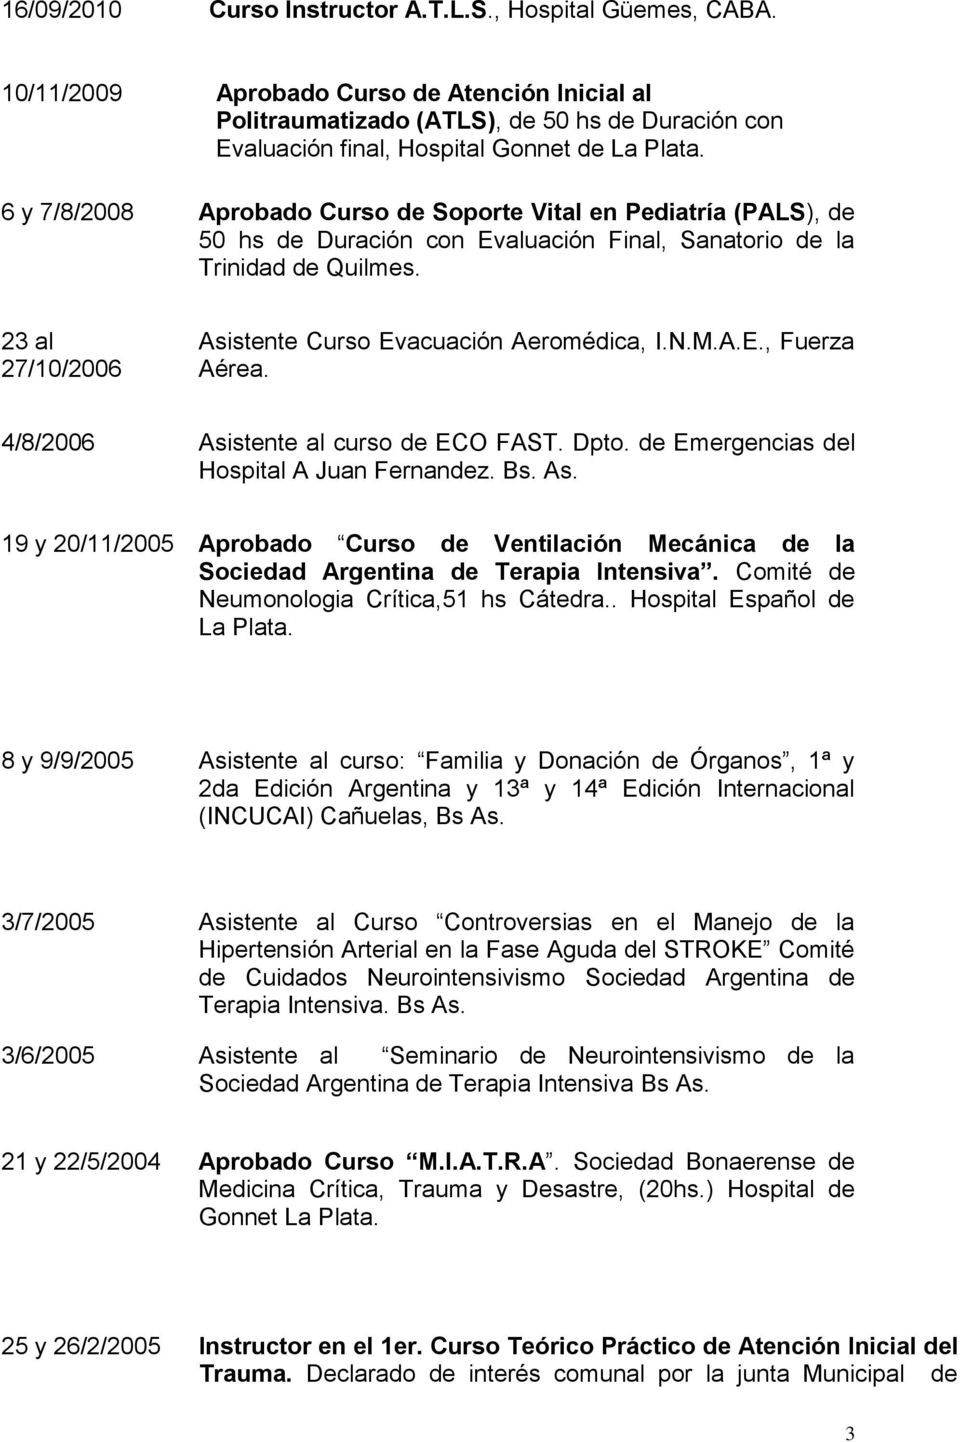 6 y 7/8/2008 Aprobado Curso de Soporte Vital en Pediatría (PALS), de 50 hs de Duración con Evaluación Final, Sanatorio de la Trinidad de Quilmes.